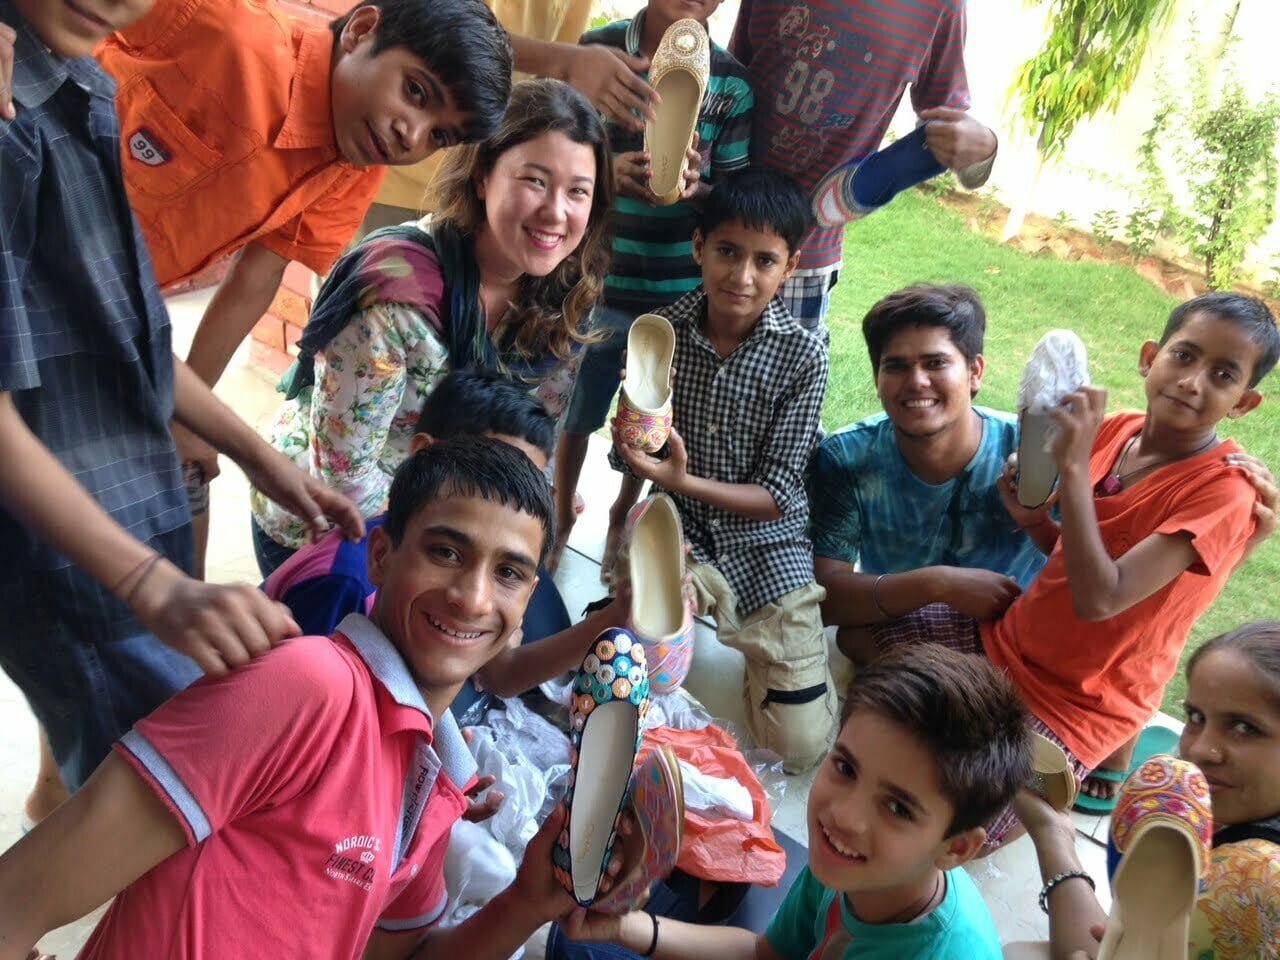 Leticia Sales (ao centro), cercada por garotos indianos que recebem doações de parte do lucro de sua marca de roupa, a Happee.